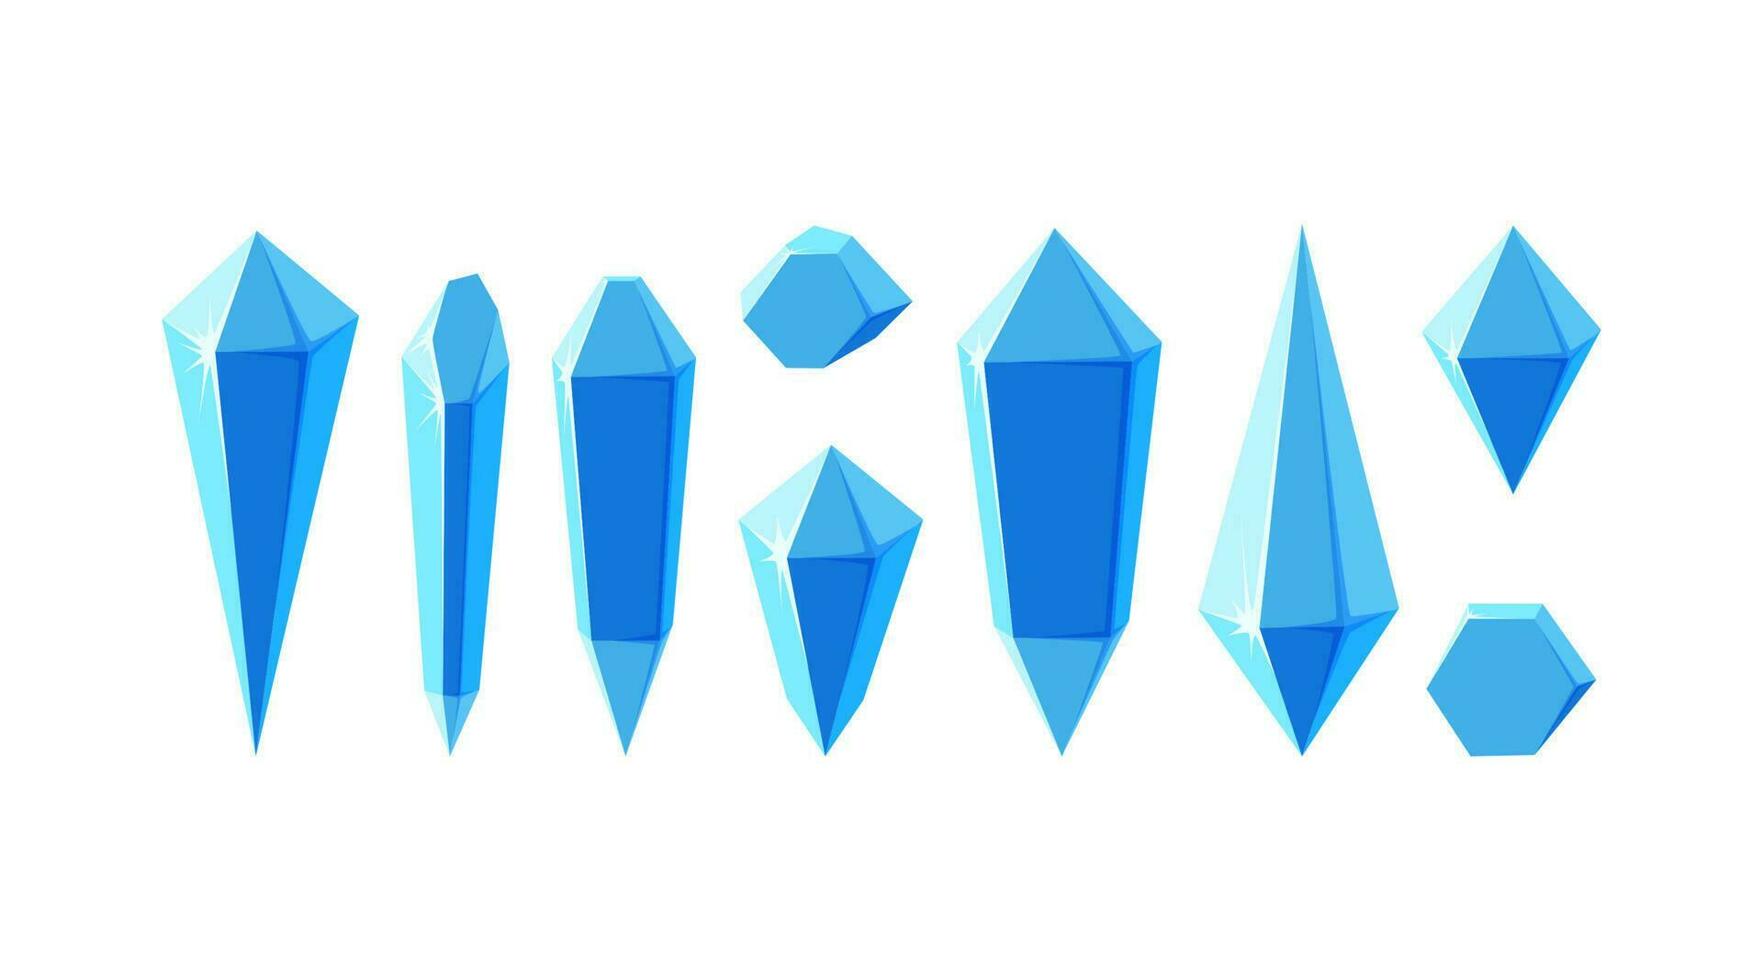 ghiaccio cristallo prismi o gemma pietre. minerali o congelato pezzi di ghiaccio per gioco design. vettore illustrazione